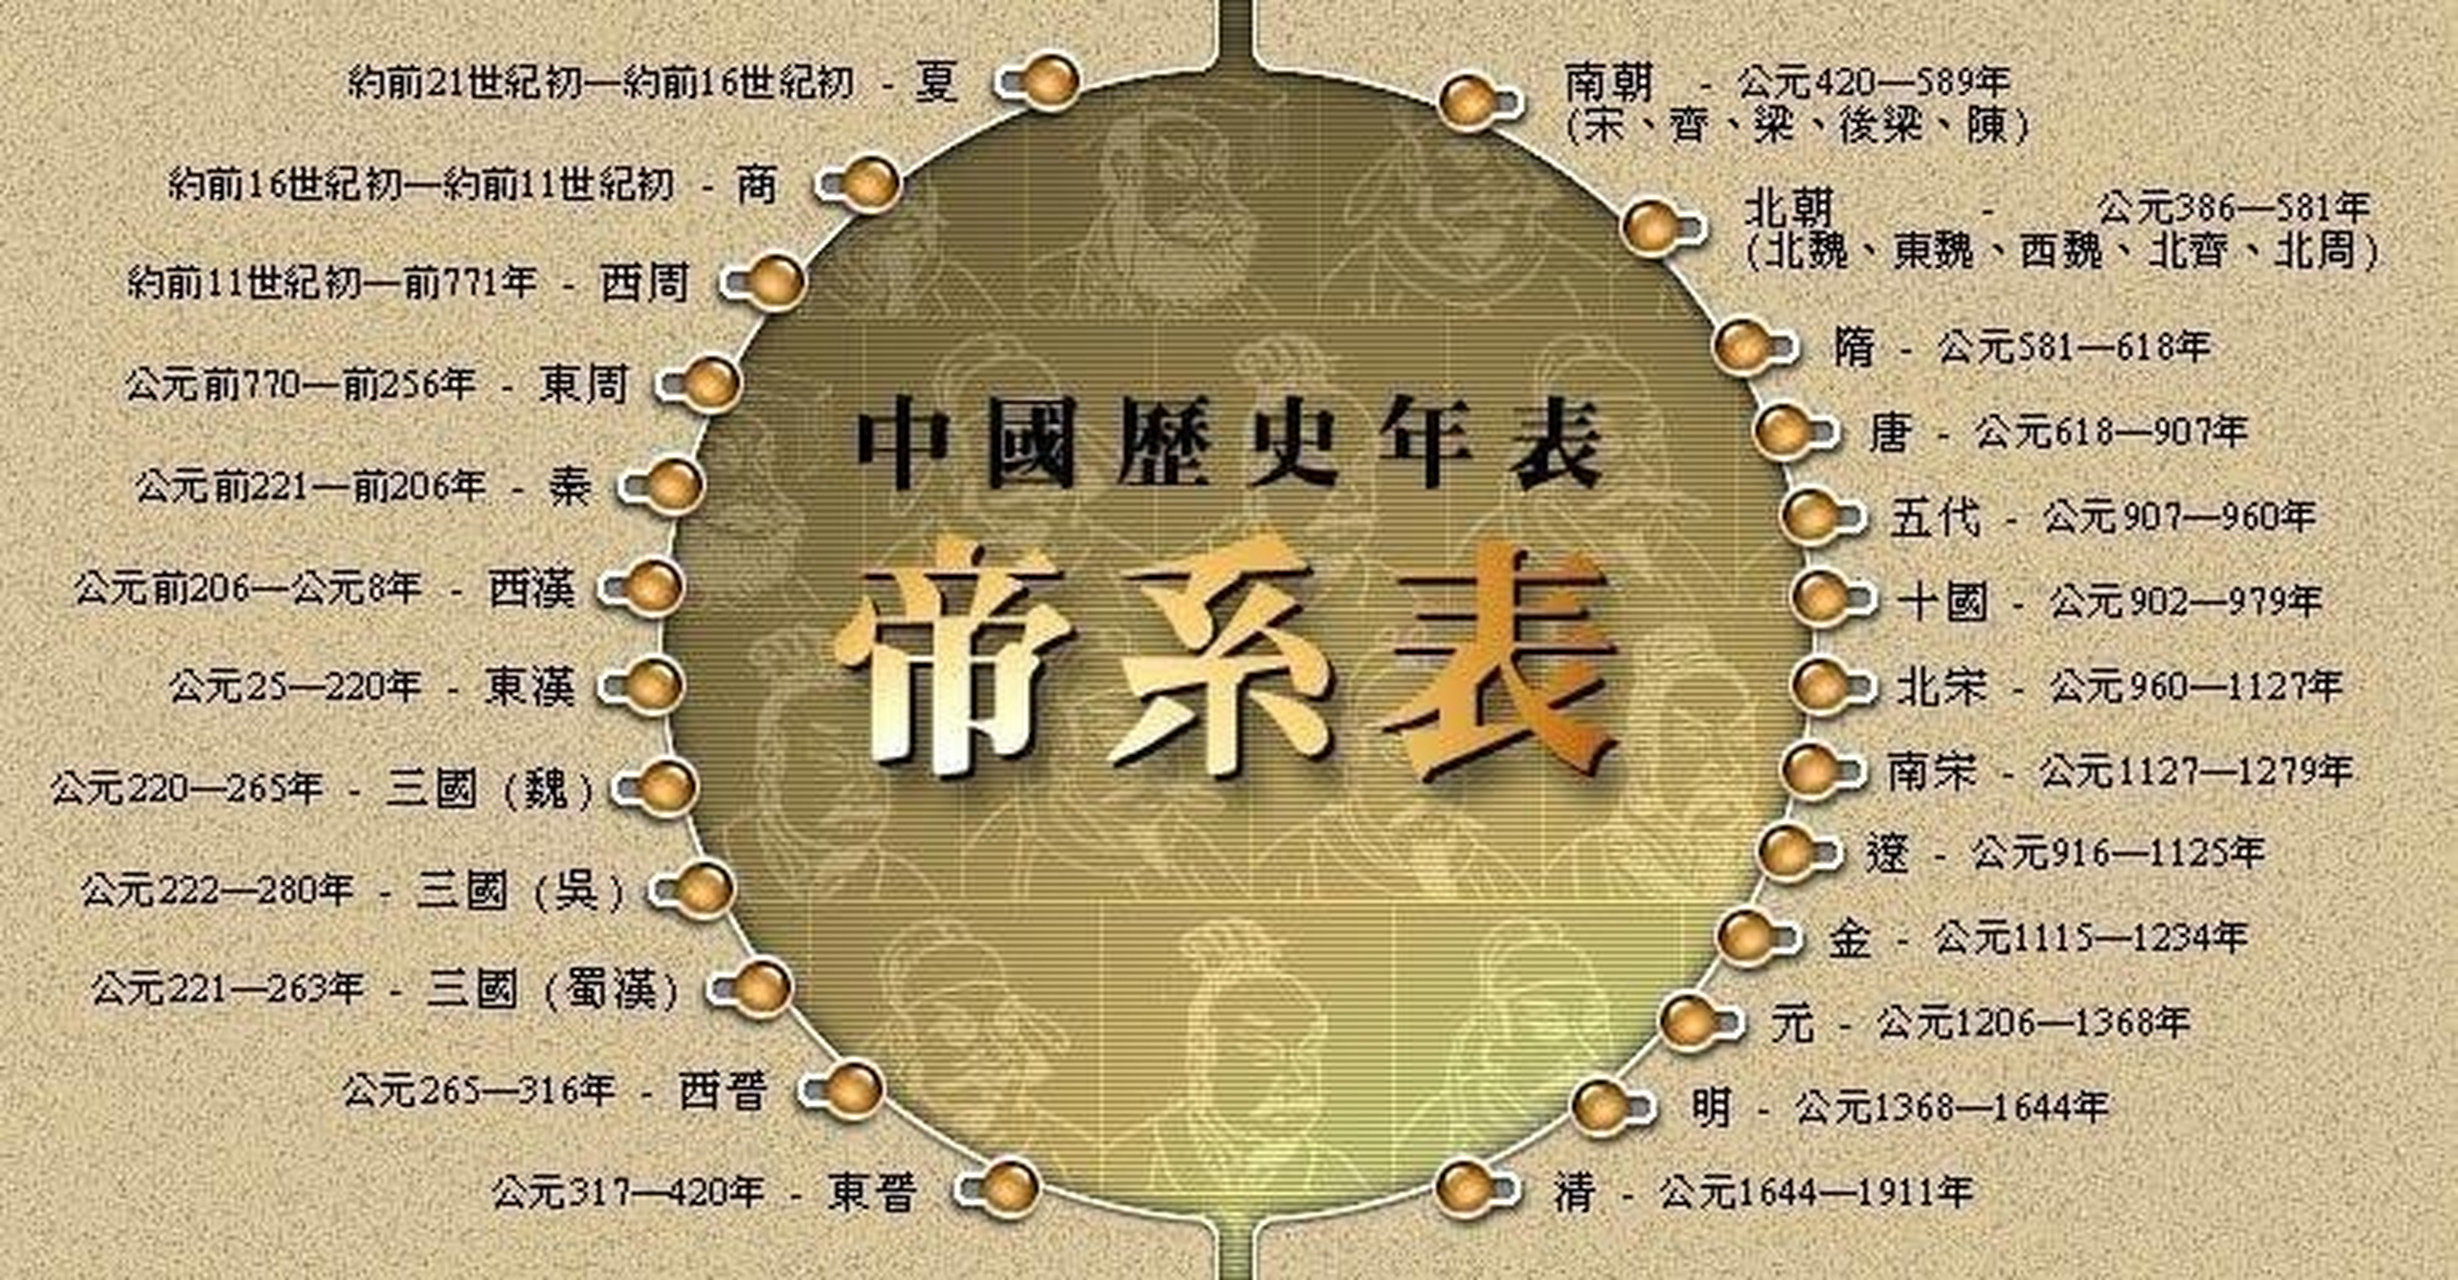 记录中国历史朝代的顺序好记又好读的方式有下面三种 1,第一种: 三皇